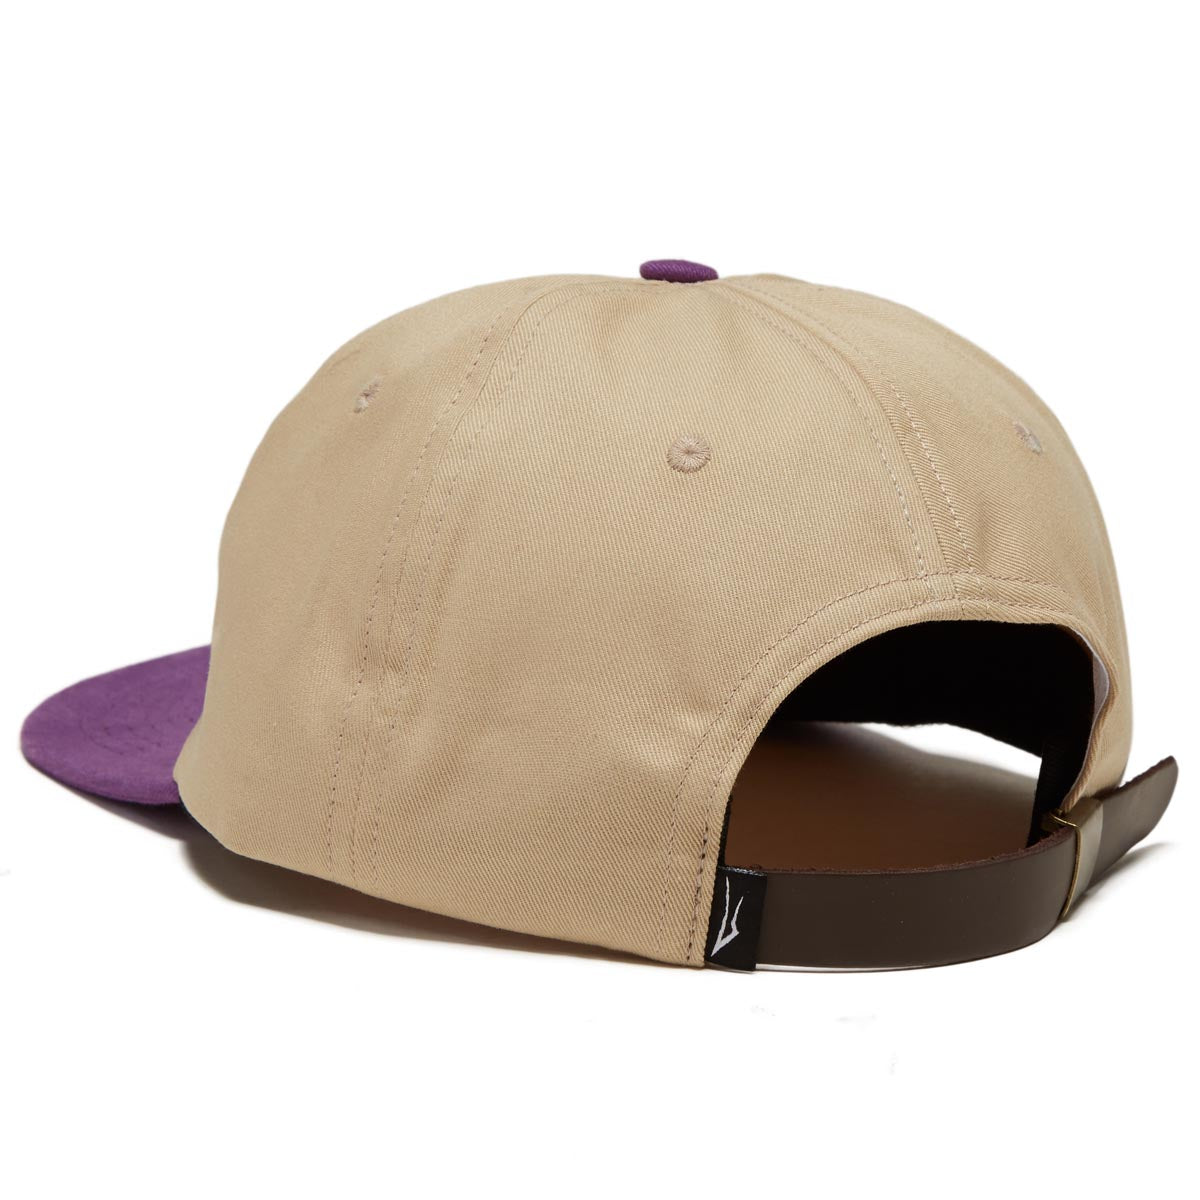 Lakai Sunny Polo Hat - Tan/Purple image 2